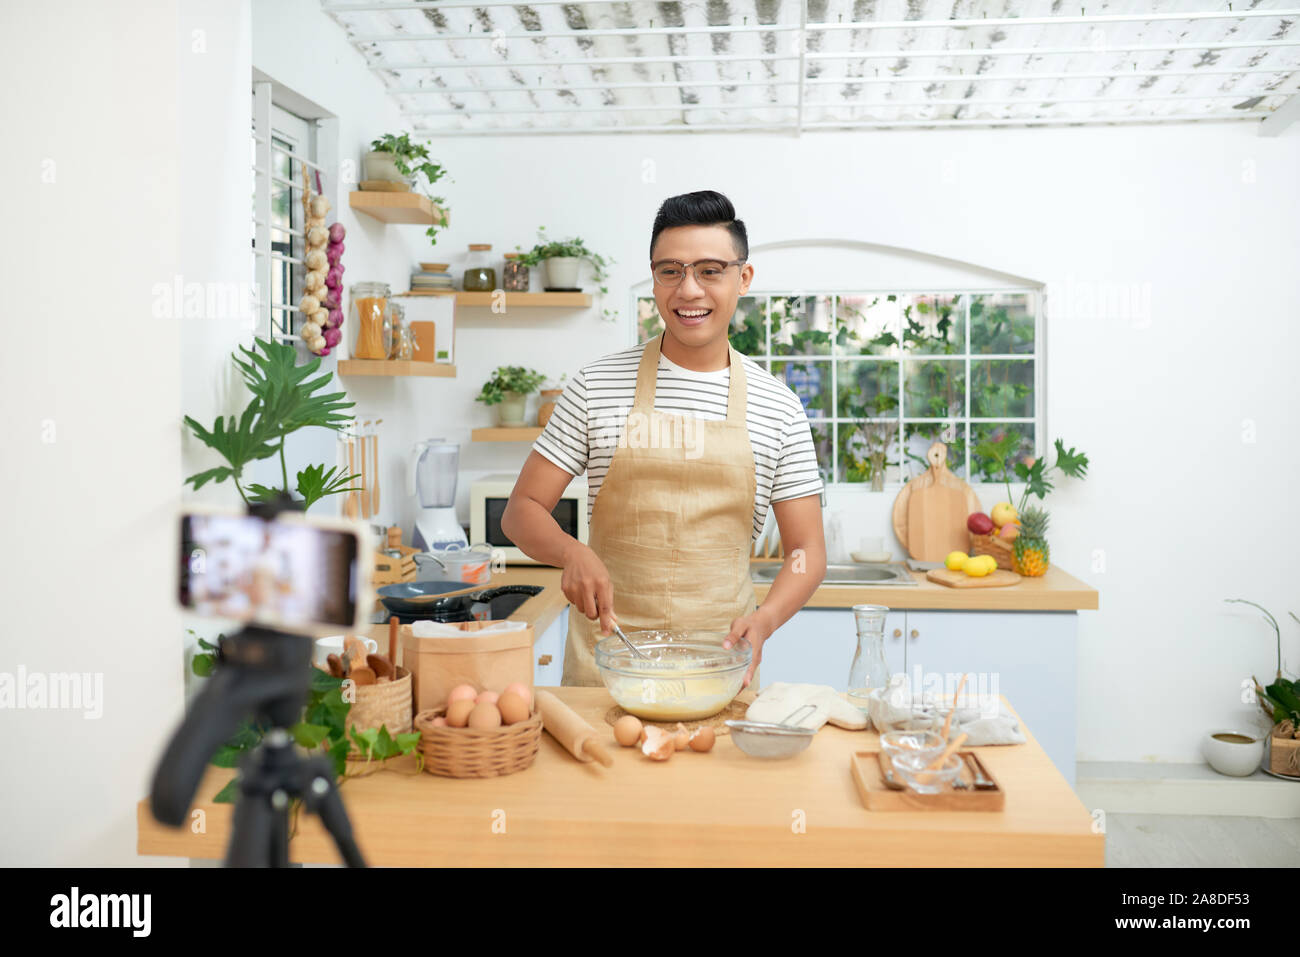 Baker Online-Kurse, Essen vorbereiten und kulinarische Ausbildung Klasse Konzept Stockfoto